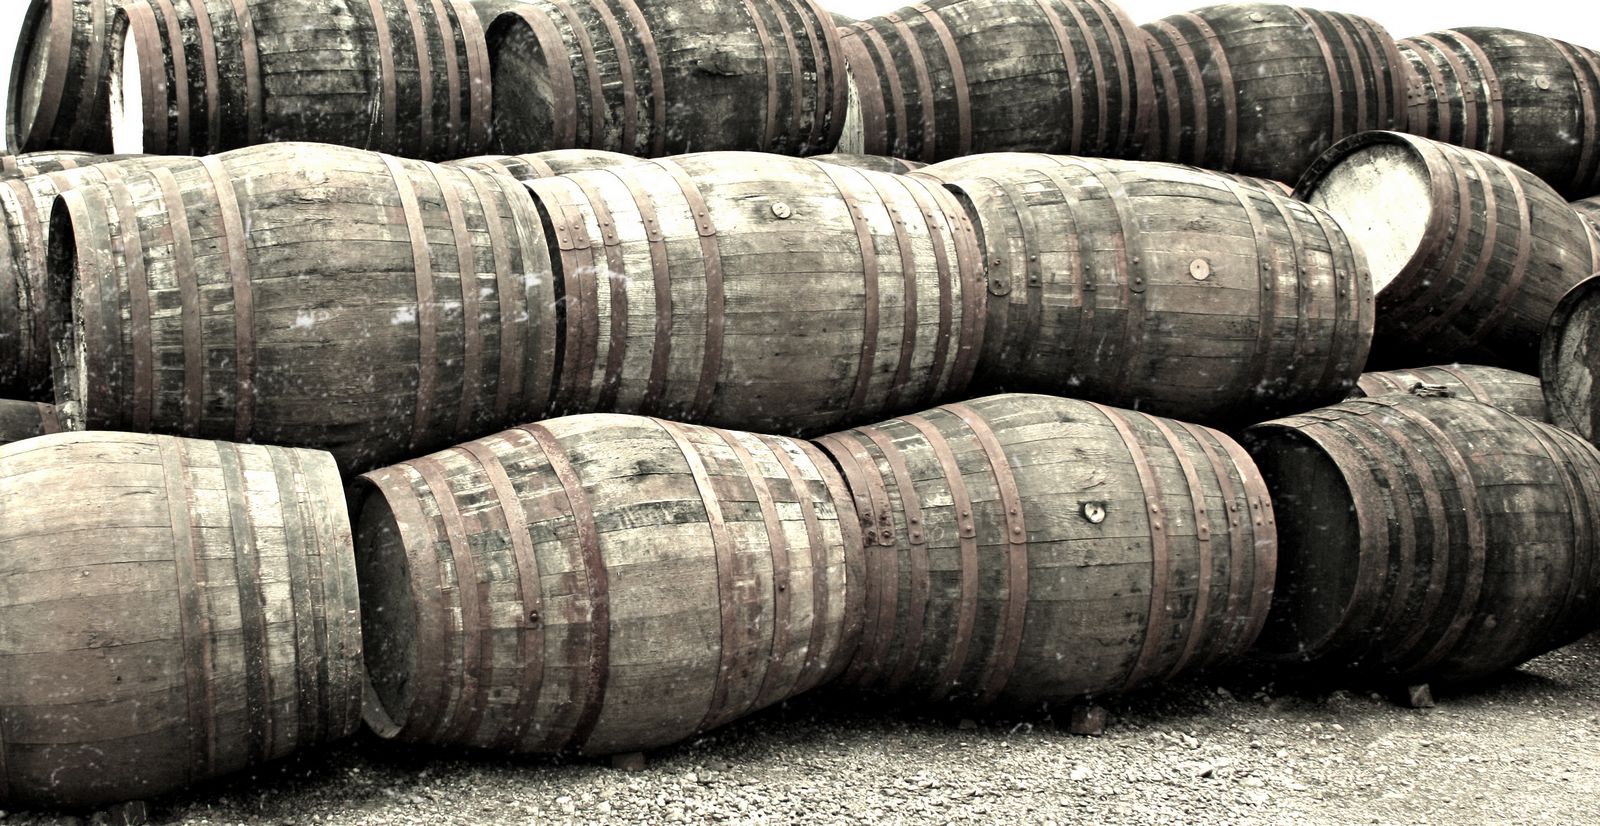 Mira cómo el Whisky fue desarrollado por Monjes católicos Medievales